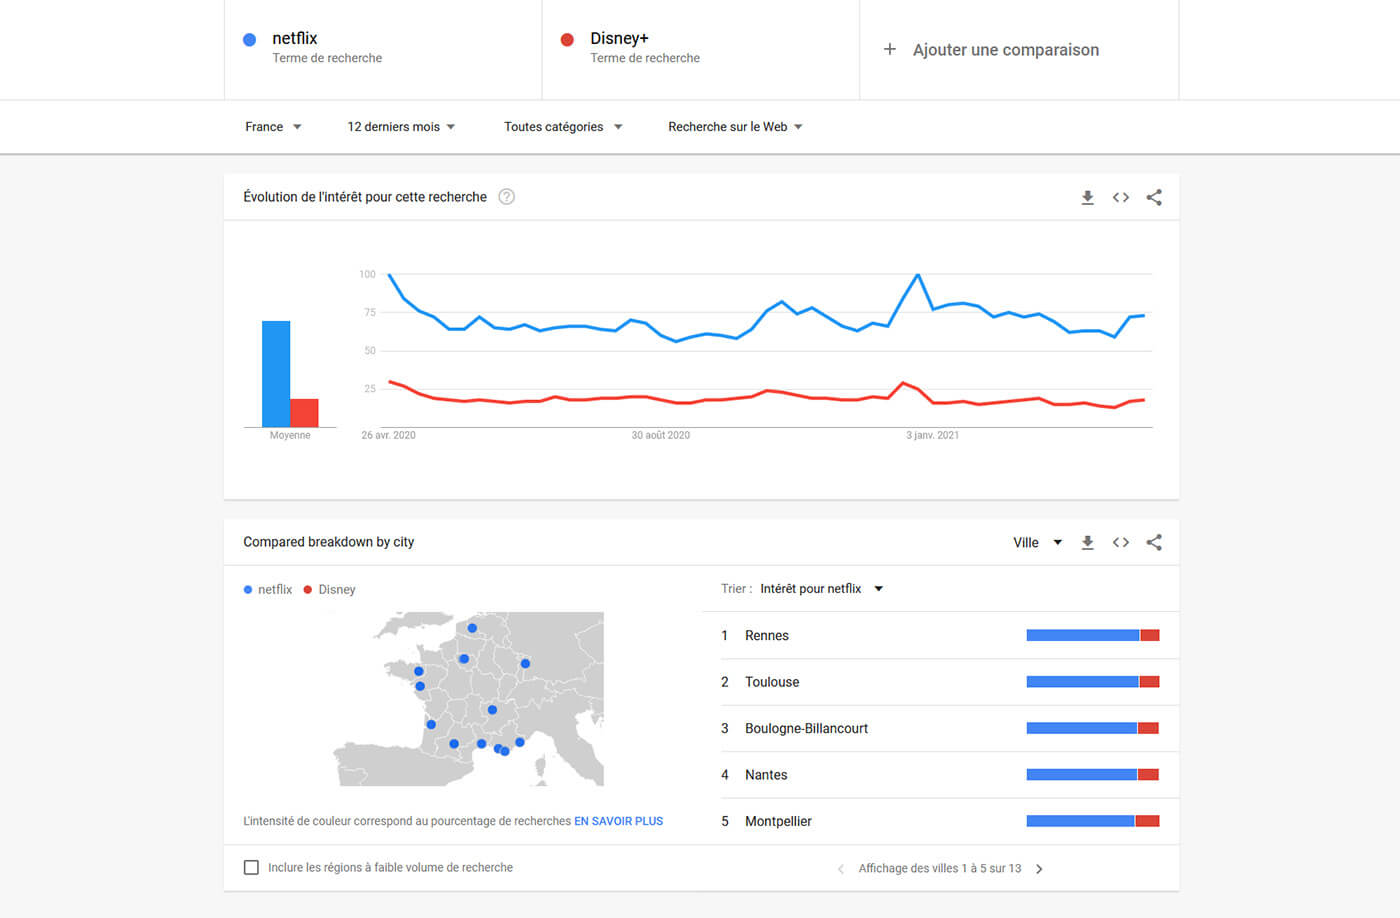 Recherche Google Trends